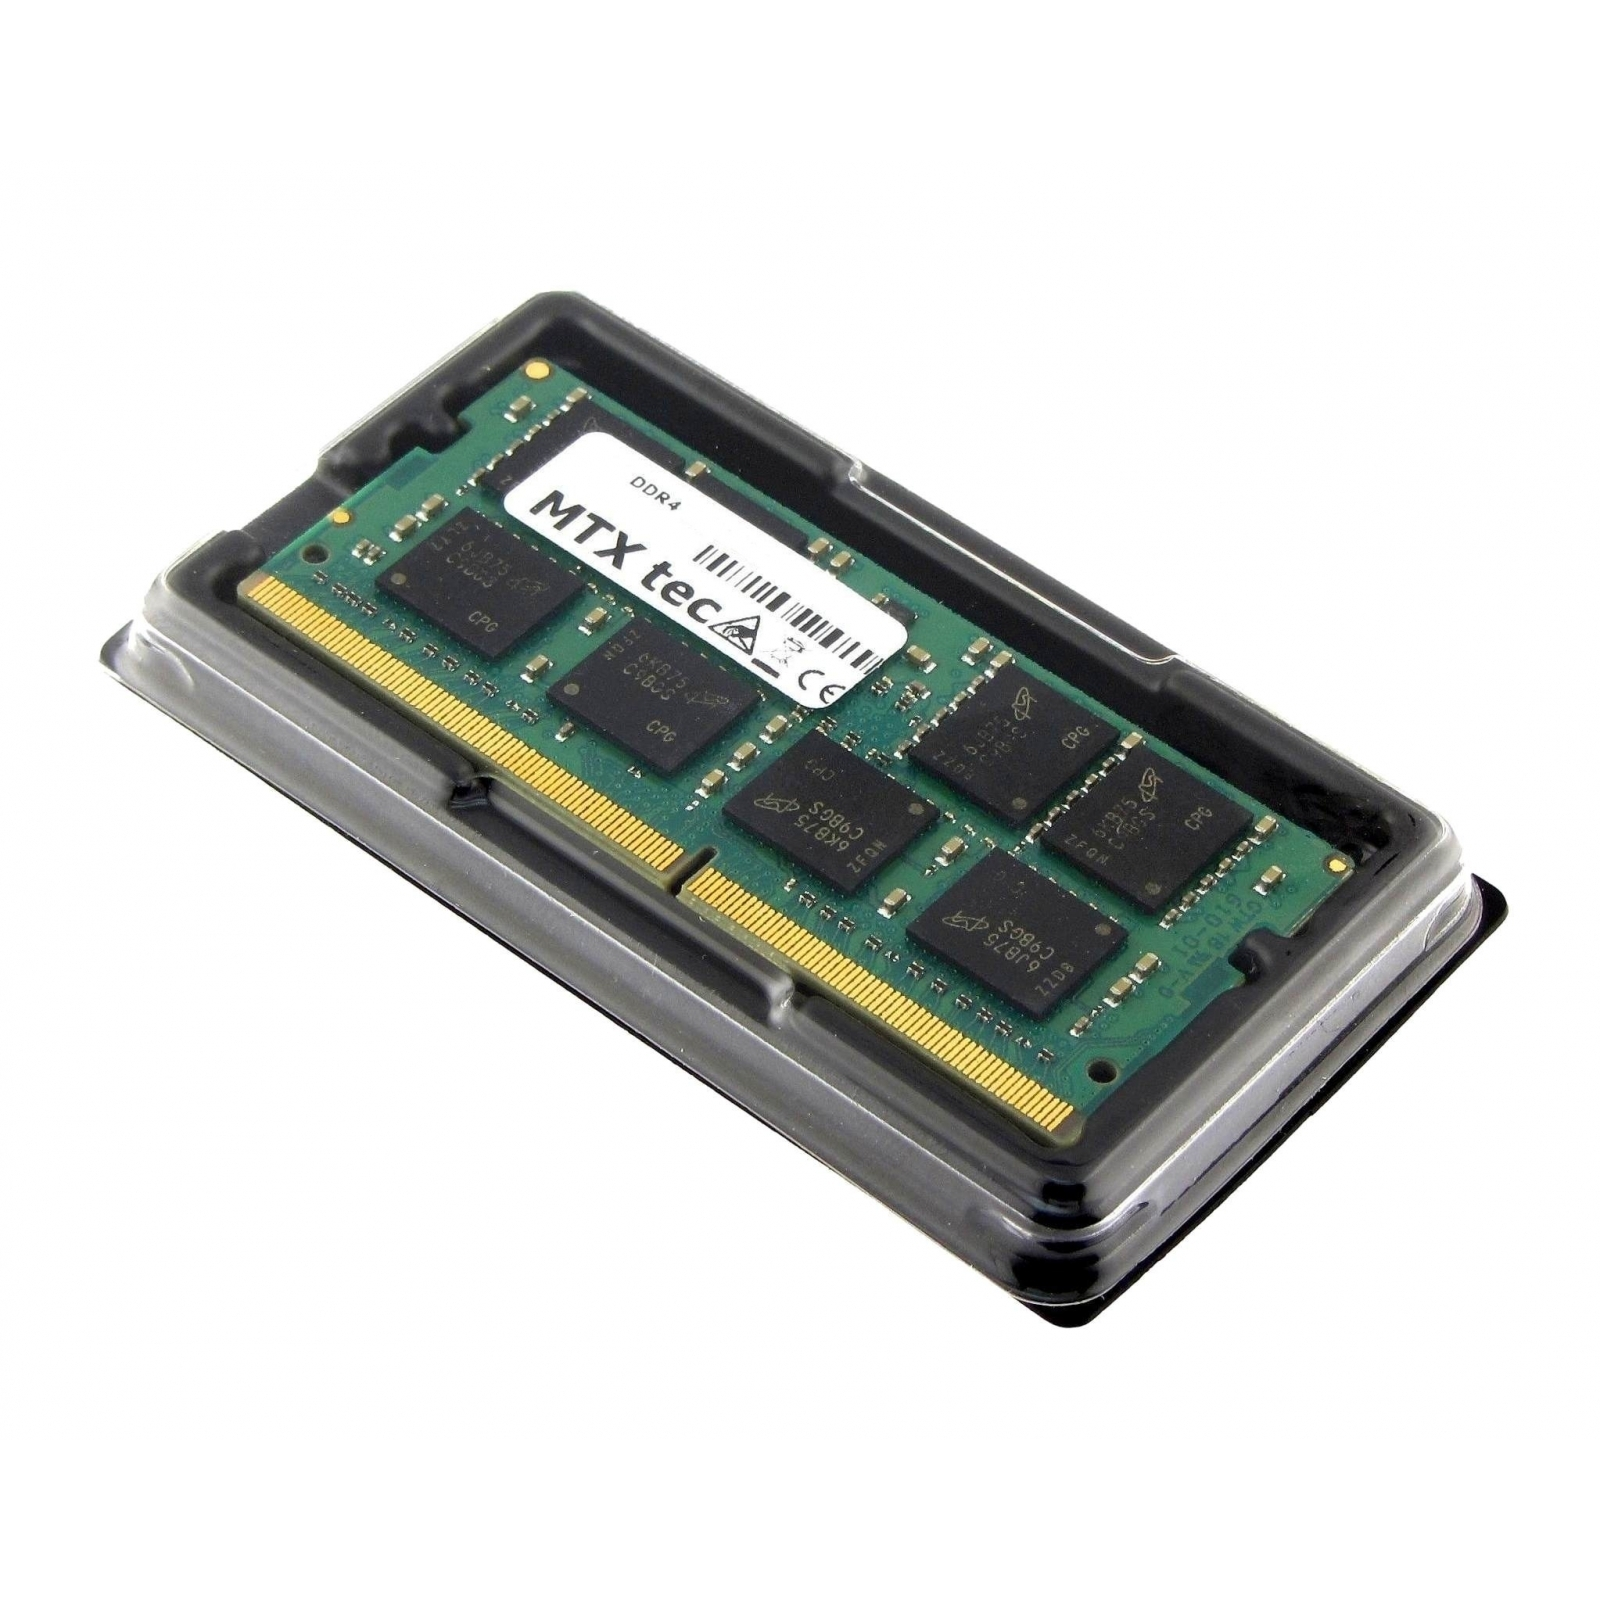 16 MTXTEC RAM GB Arbeitsspeicher DDR4 G5 (3KY96EA) für HP Notebook-Speicher 450 GB ProBook 16